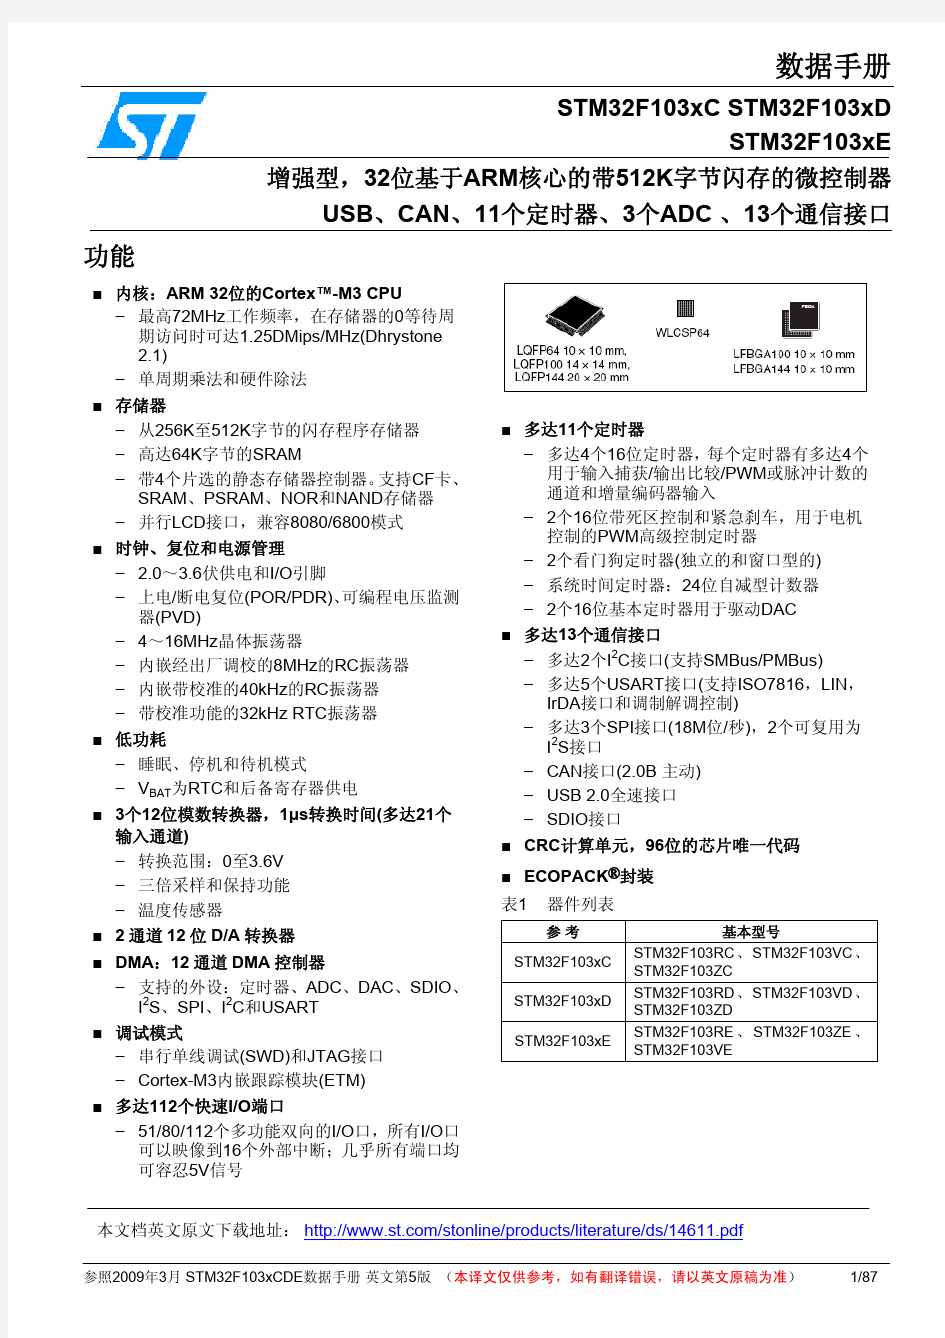 STM32F103C中文资料